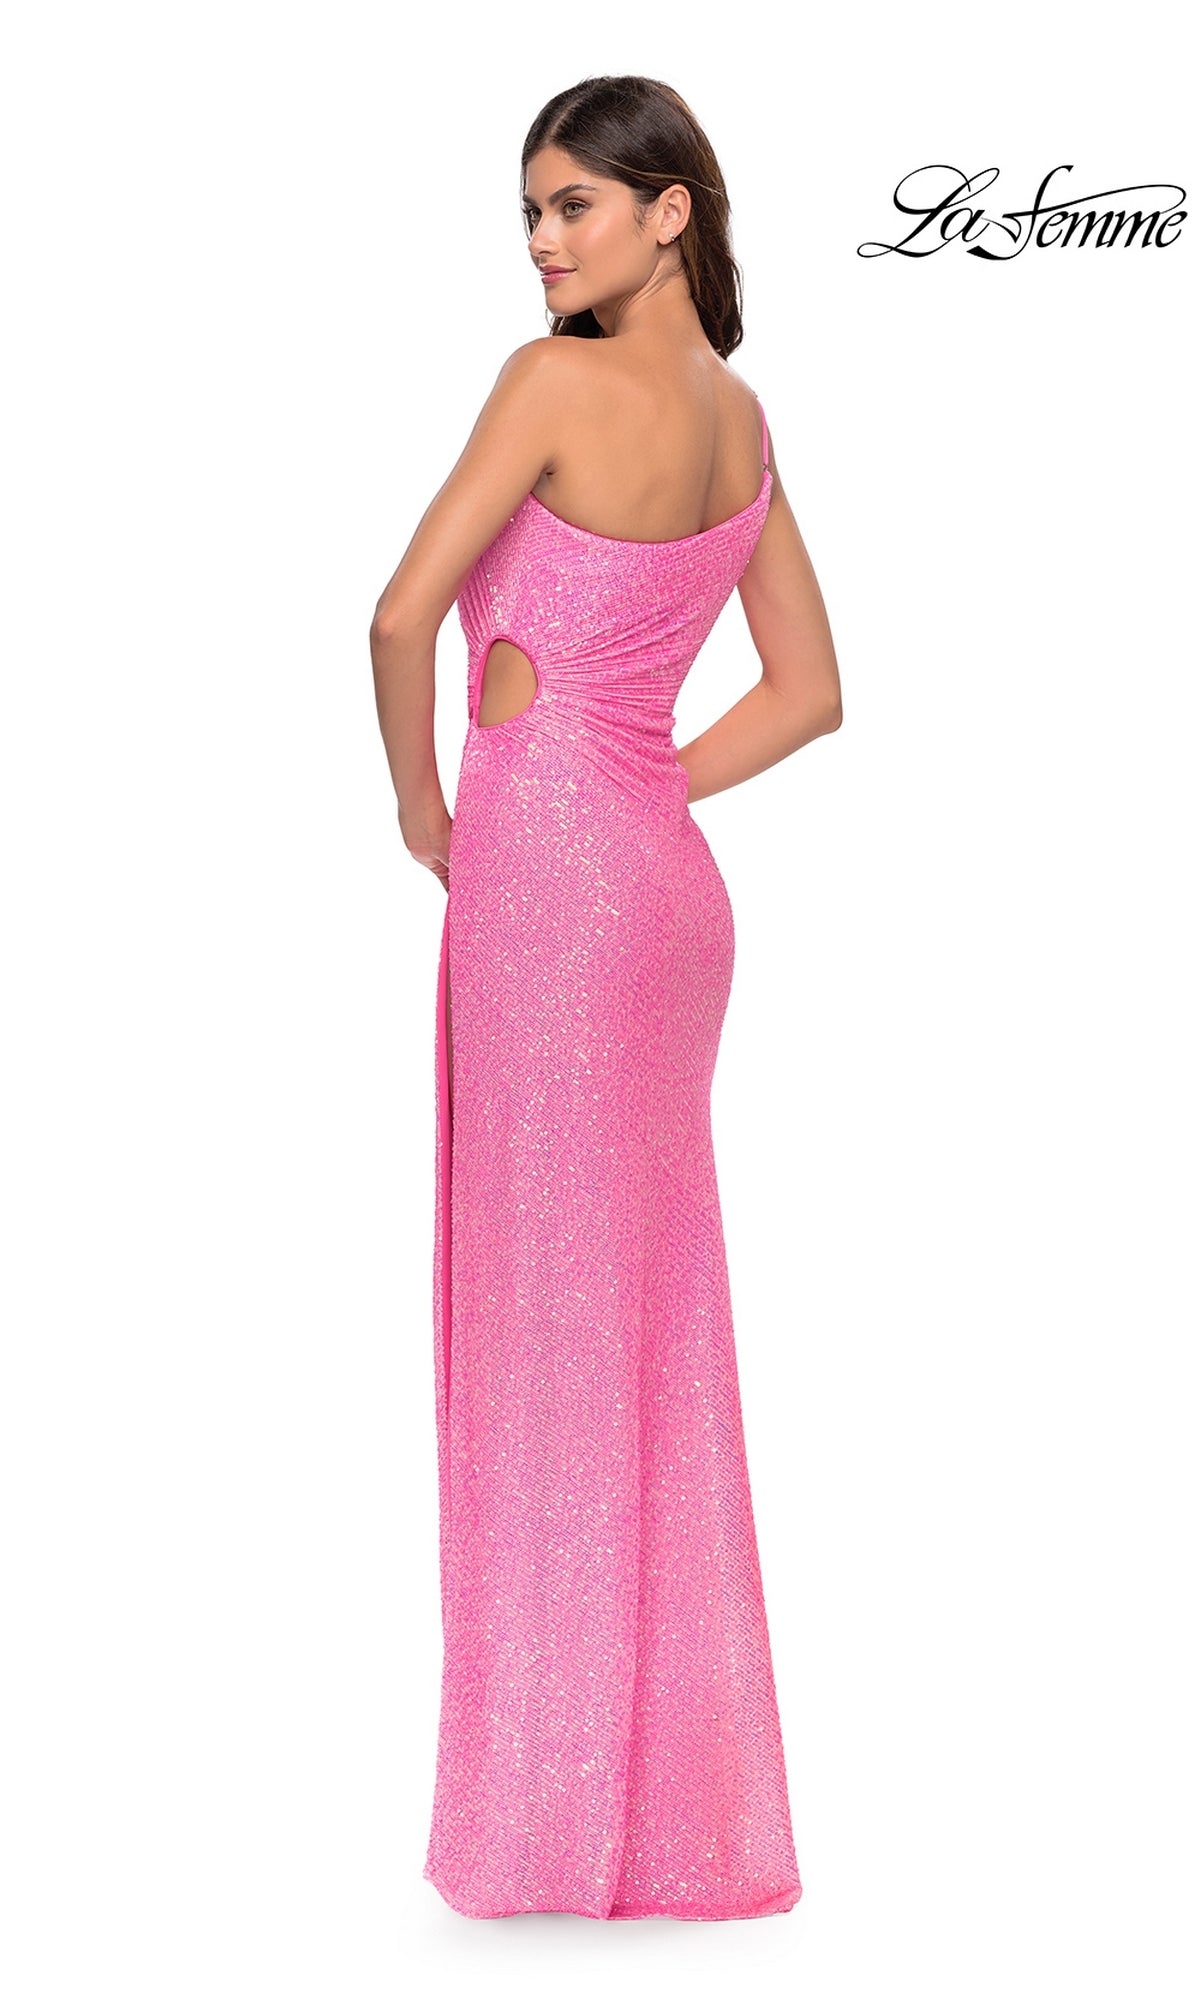 La Femme One-Shoulder Sequin Pink Prom Dress 31213